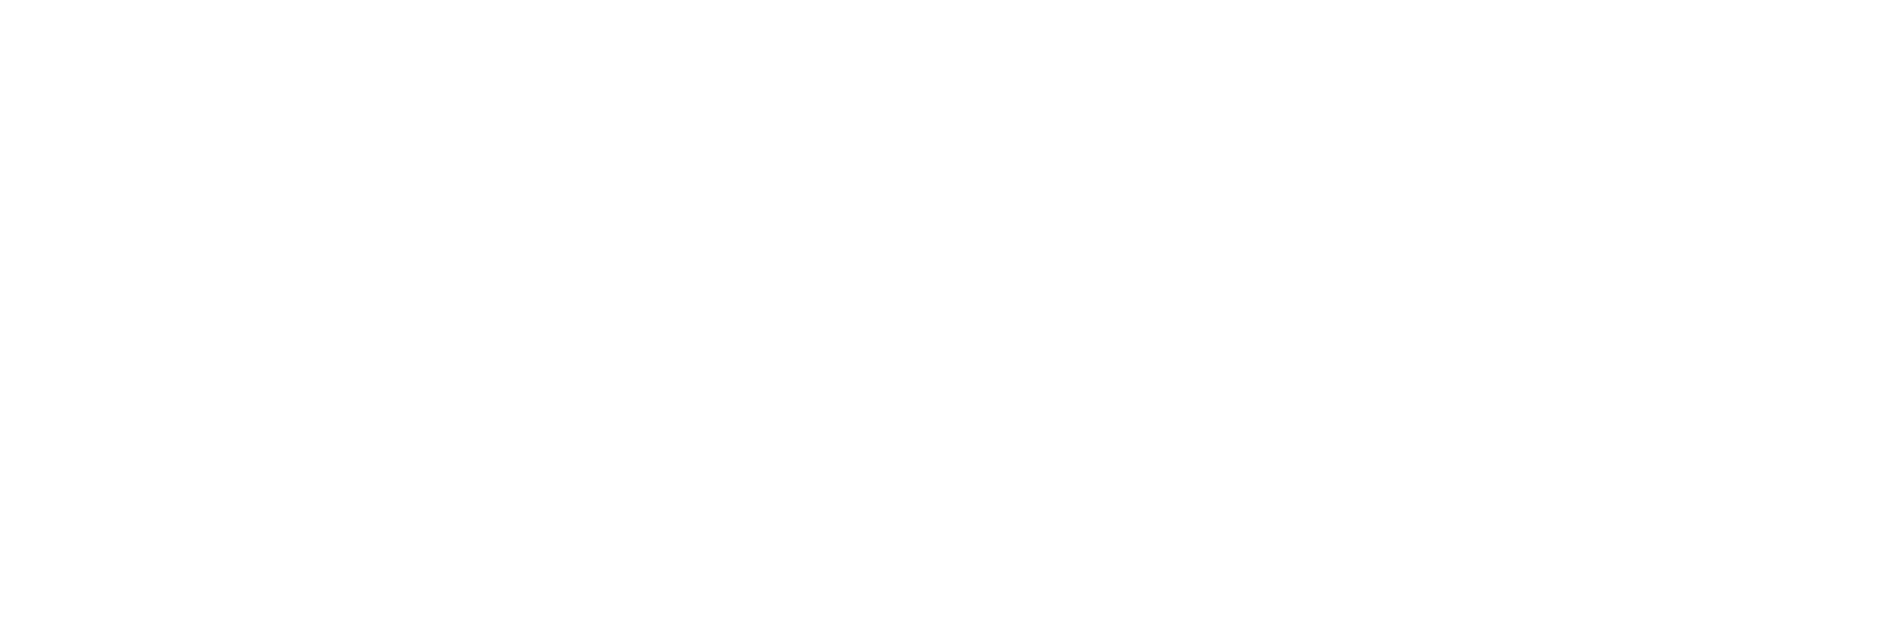 六本木アートナイト2018 「勇者の砂丘｜2000年後を砂場で発掘しよう!」参加者募集中!